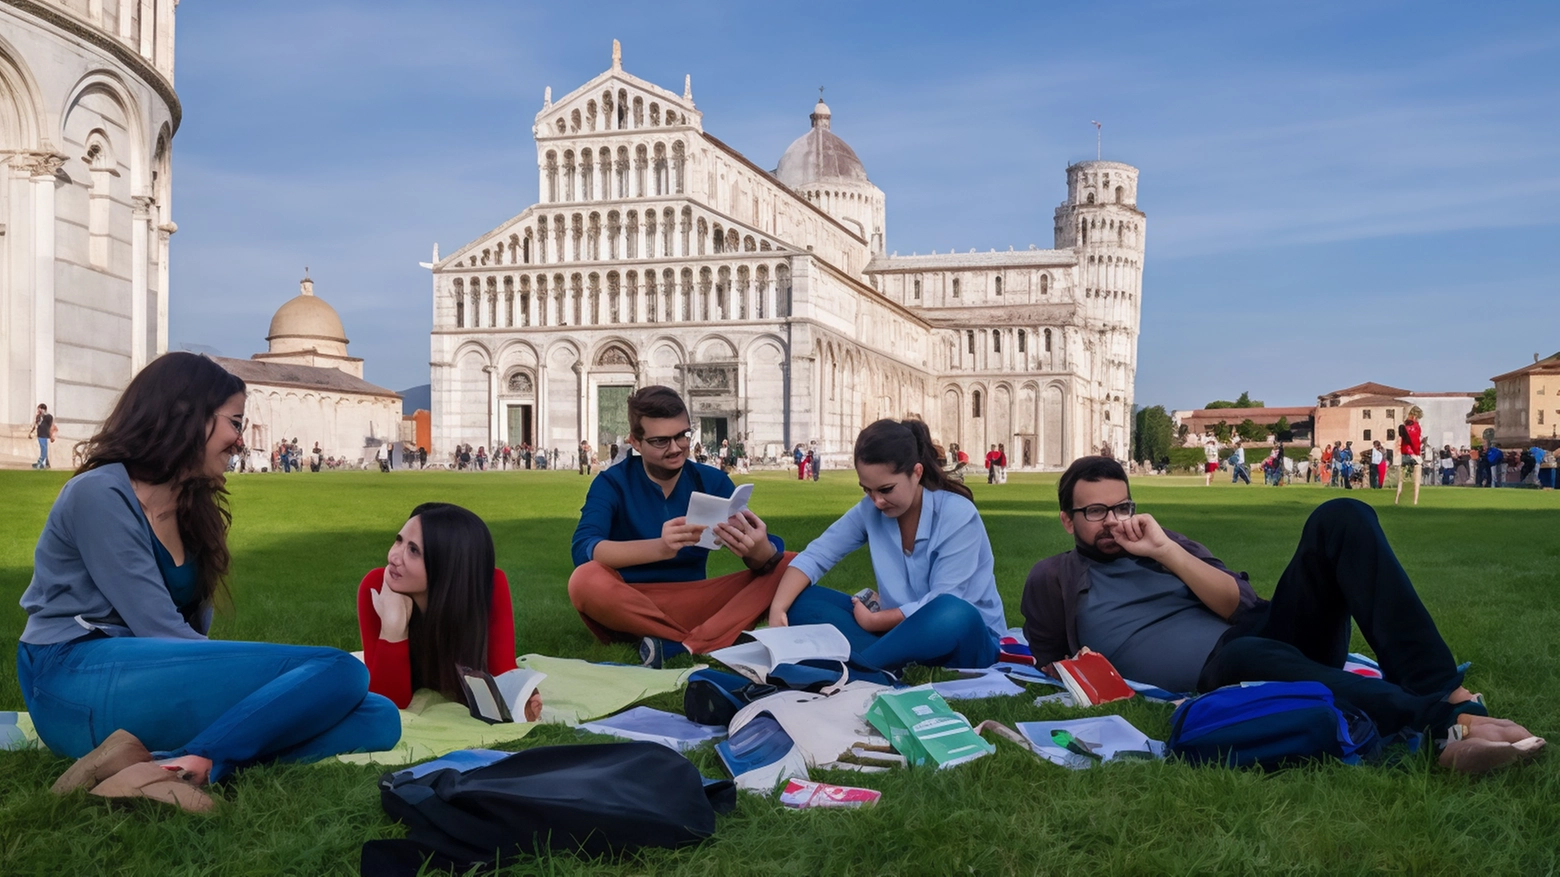 L'Università di Pisa promuove una comunità coesa basata sulla responsabilità reciproca, offrendo politiche di welfare avanzate e supporto per studenti in varie situazioni, con l'obiettivo di favorire l'emergere dei talenti individuali a beneficio di tutti.